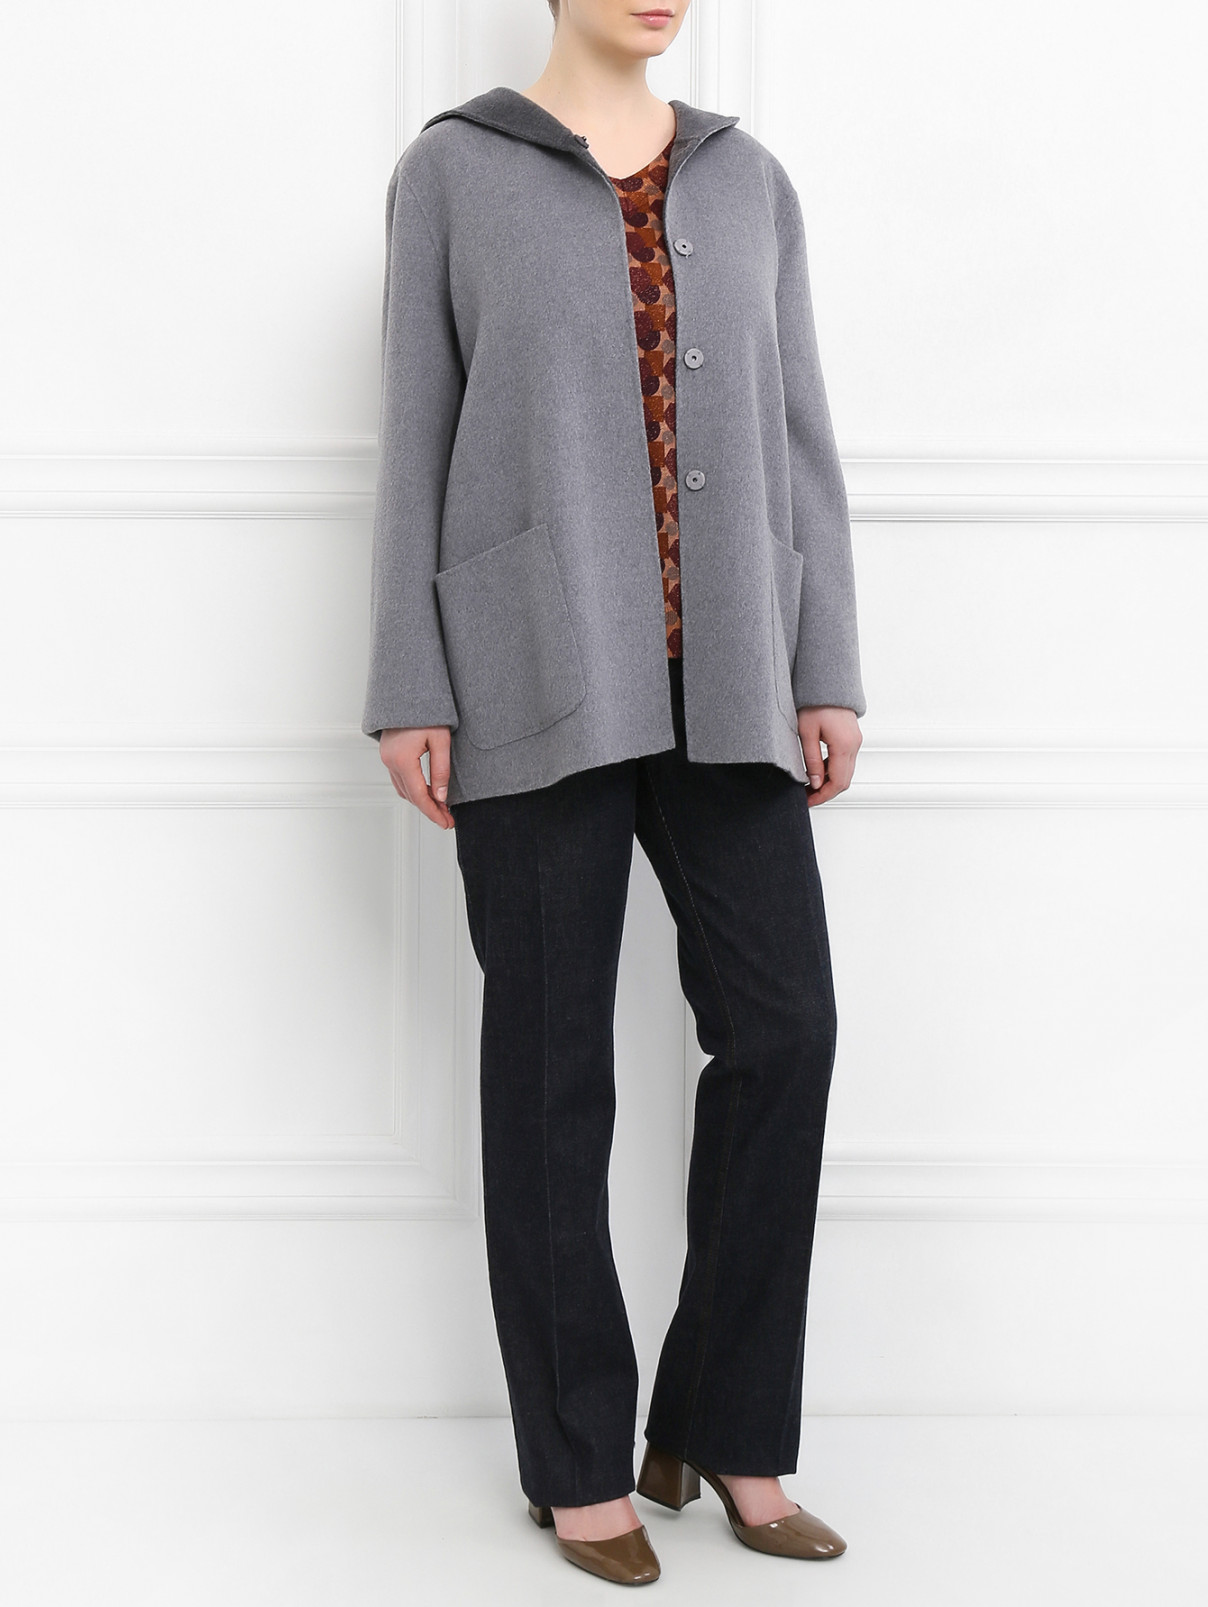 Пальто из шерсти Marina Sport  –  Модель Общий вид  – Цвет:  Серый